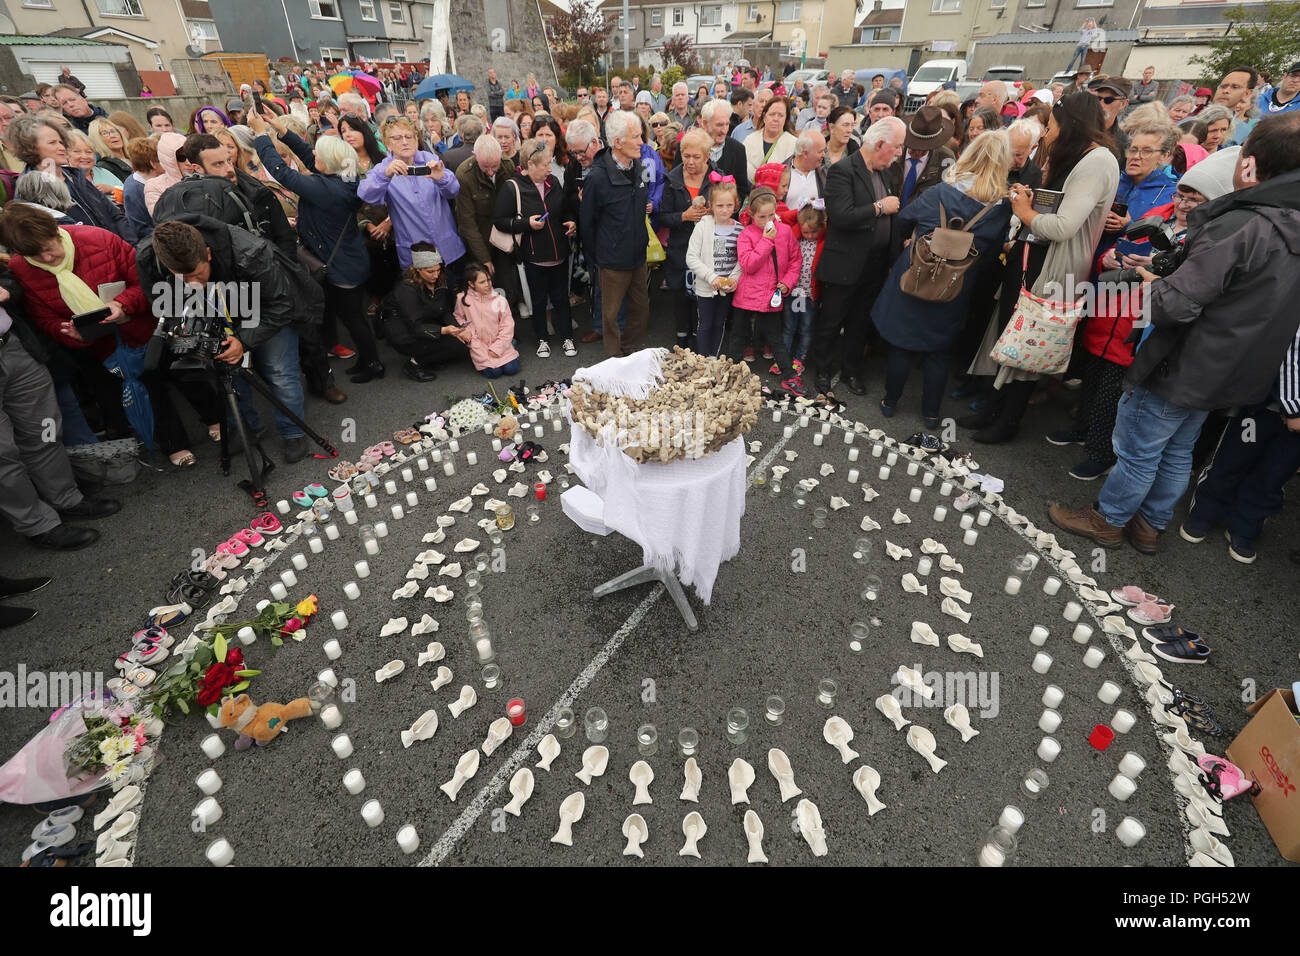 Le persone si radunano per protestare presso il sito dell'ex Tuam casa per ragazze madri nella Contea di Galway, dove una massa tomba di intorno 800 neonati è stato recentemente scoperto, allo stesso tempo come Papa Francesco contiene una massa di Dublino. Foto Stock